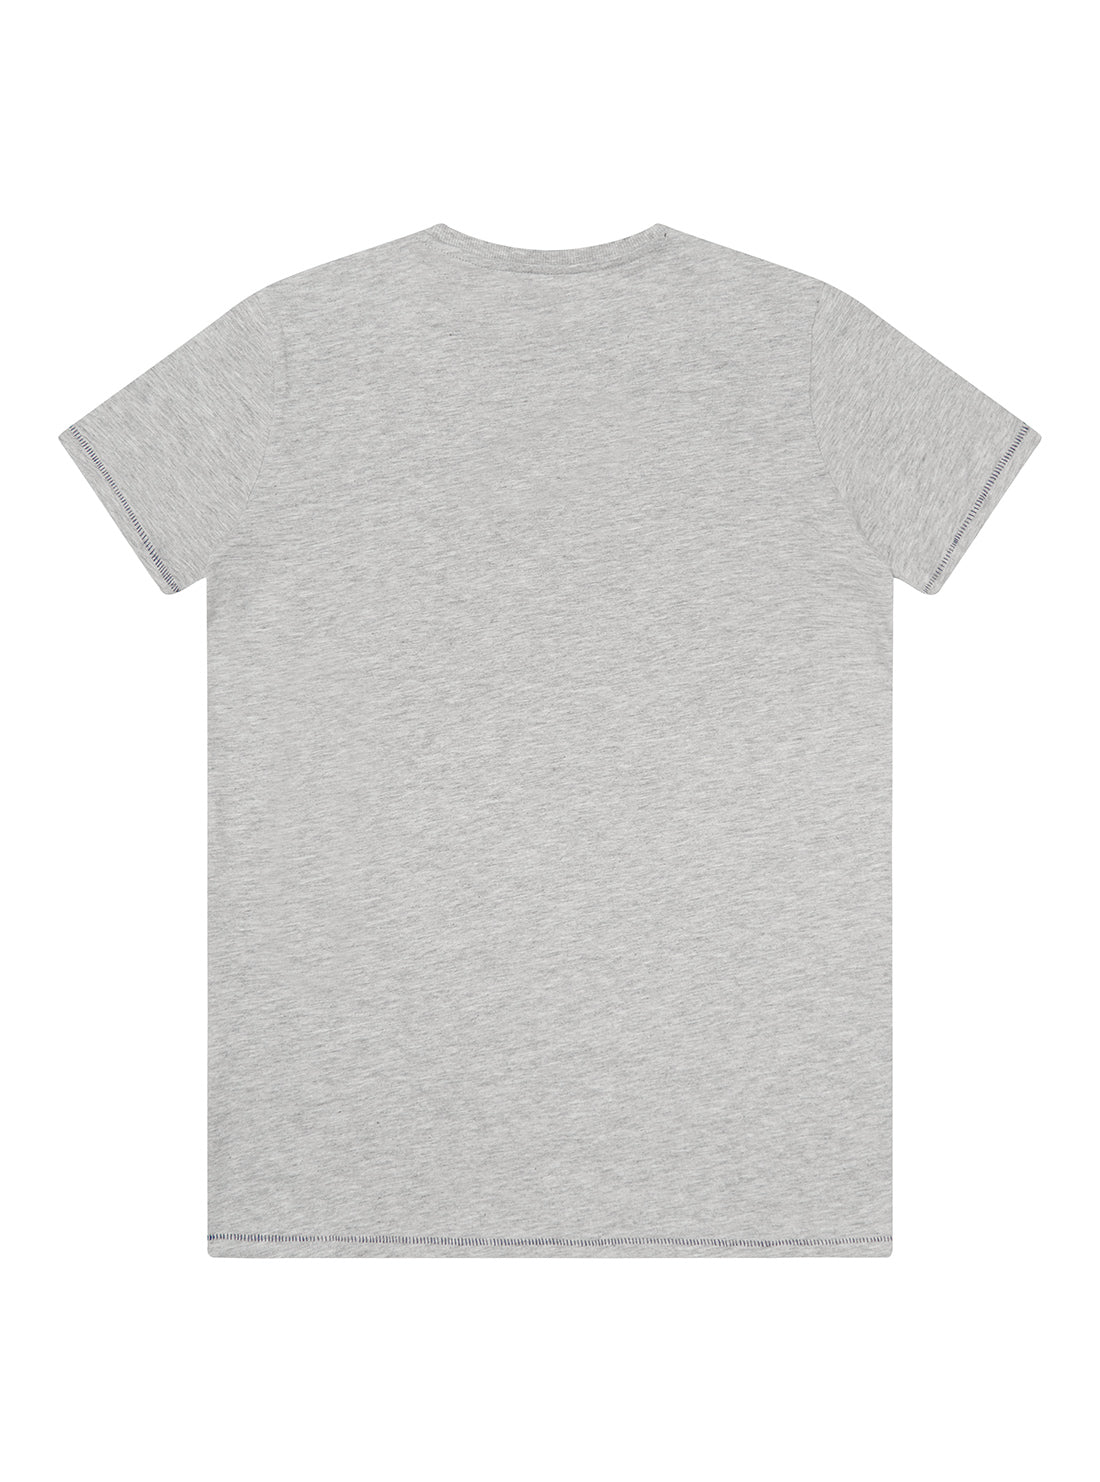 GUESS Kids Big Boy Grey American Tradition Logo T-Shirt (7-16) L2RI11K8HM0 Back View